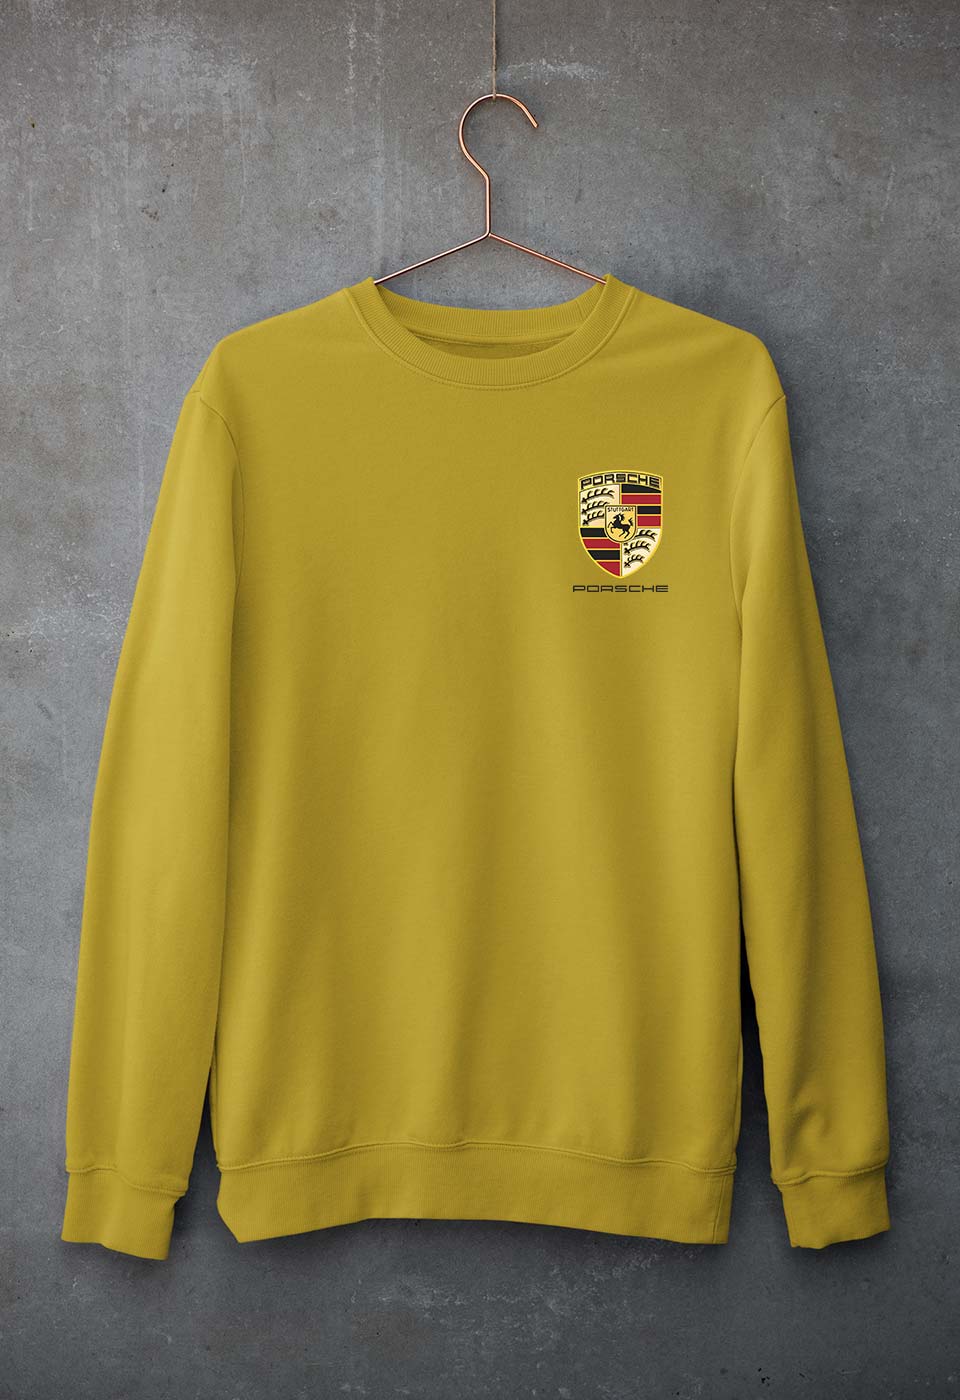 Porsche Pocket Logo Unisex Sweatshirt for Men/Women-S(40 Inches)-Mustard Yellow-Ektarfa.online